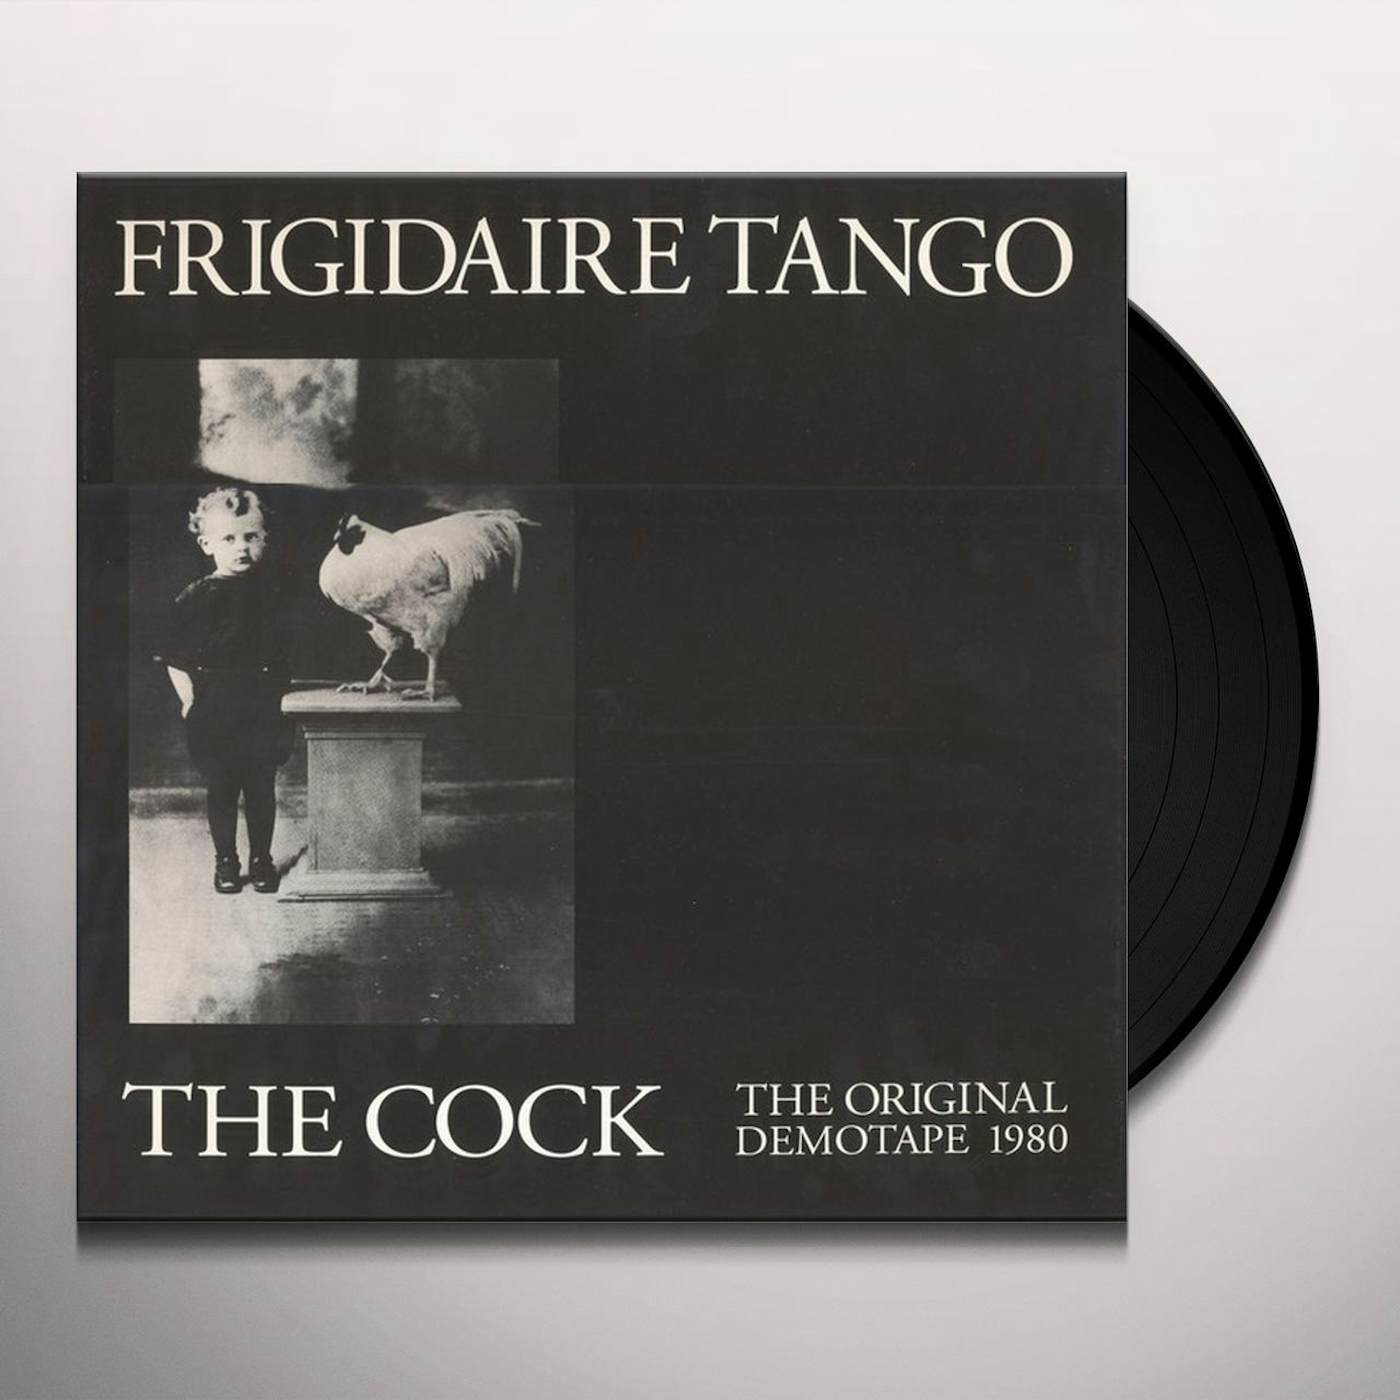 Frigidaire Tango ORIGINAL DEMOTAPE 1980 Vinyl Record